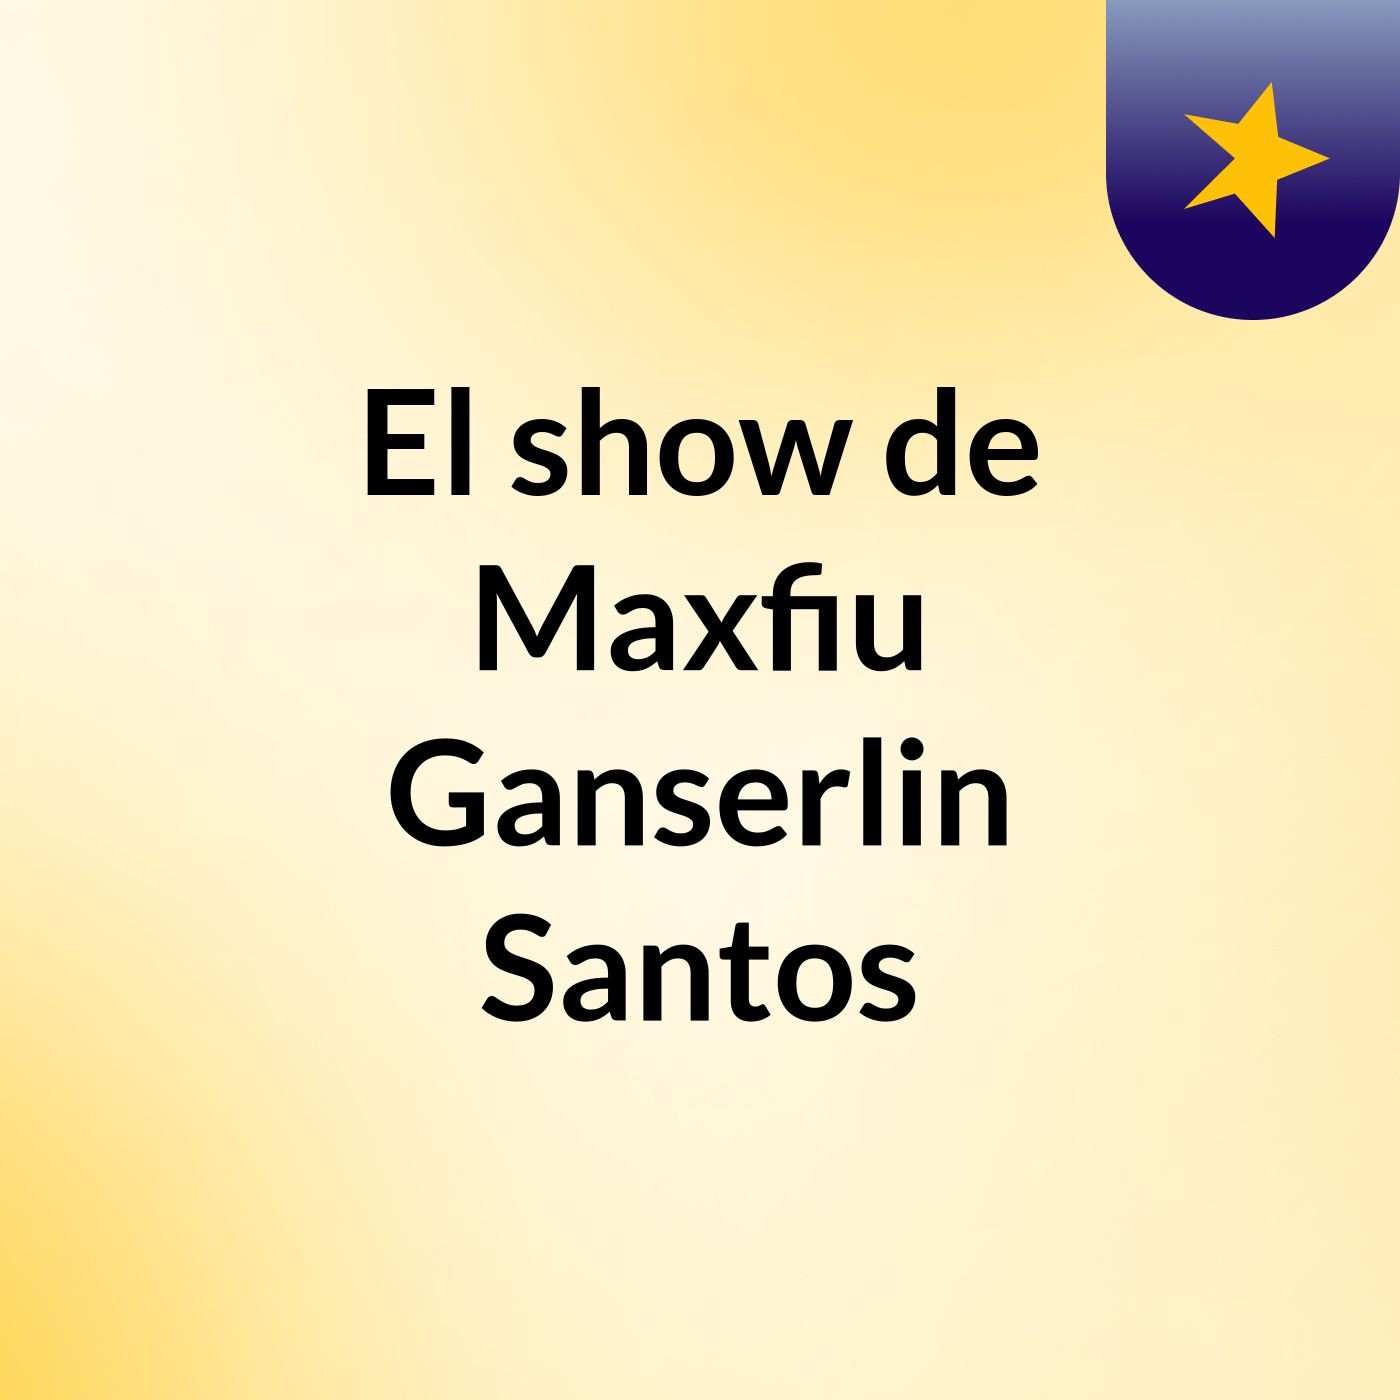 El show de Maxfiu Ganserlin Santos